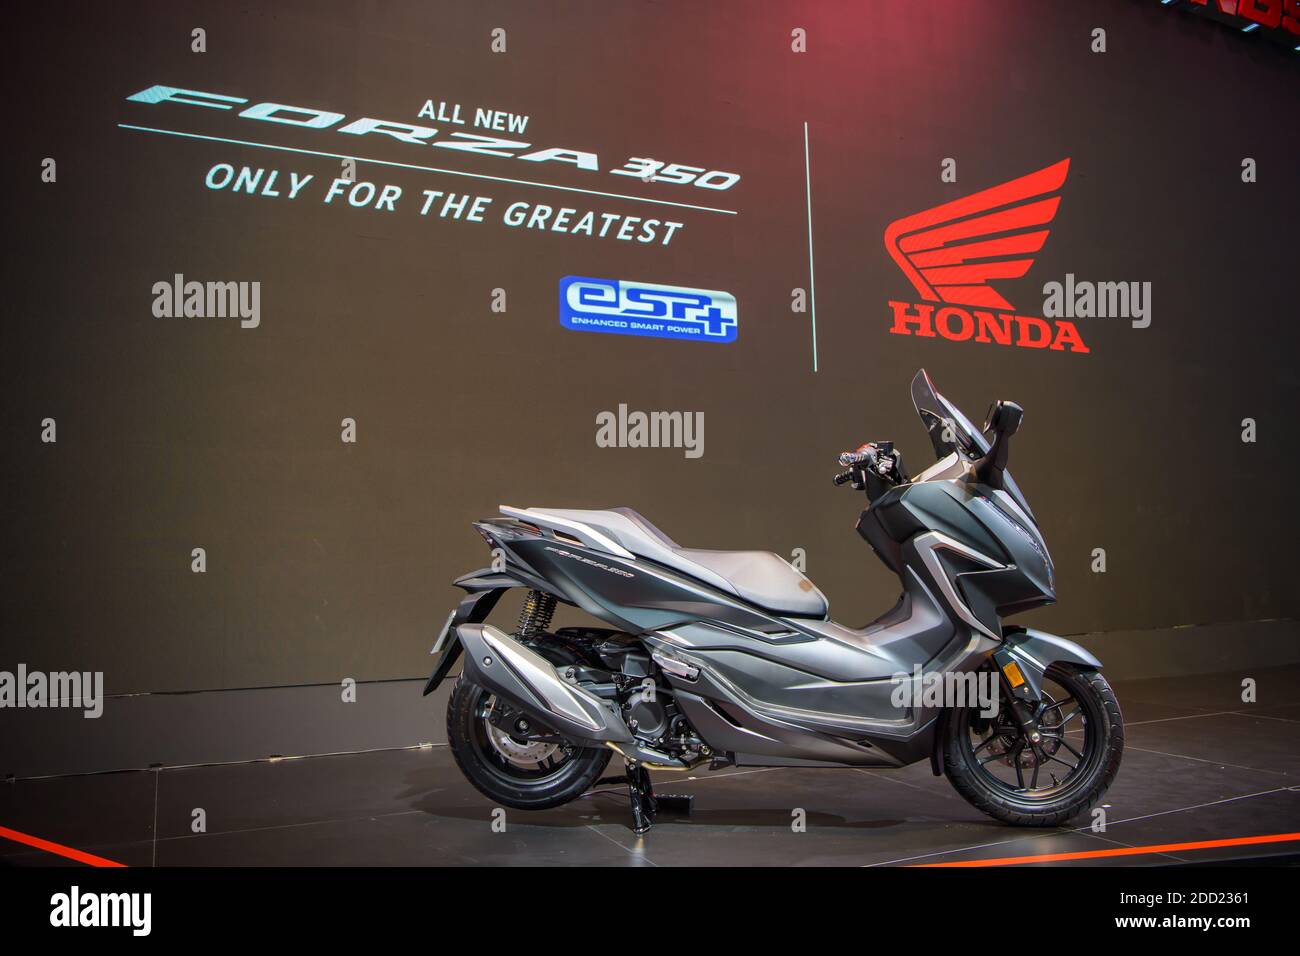 Honda Alle neuen Forza 350 Motorräder auf der 41. BANGKOK INTERNATIONAL MOTOR SHOW 2020 am 14. Juli 2020 in Nonthaburi, Thailand ausgestellt. Stockfoto